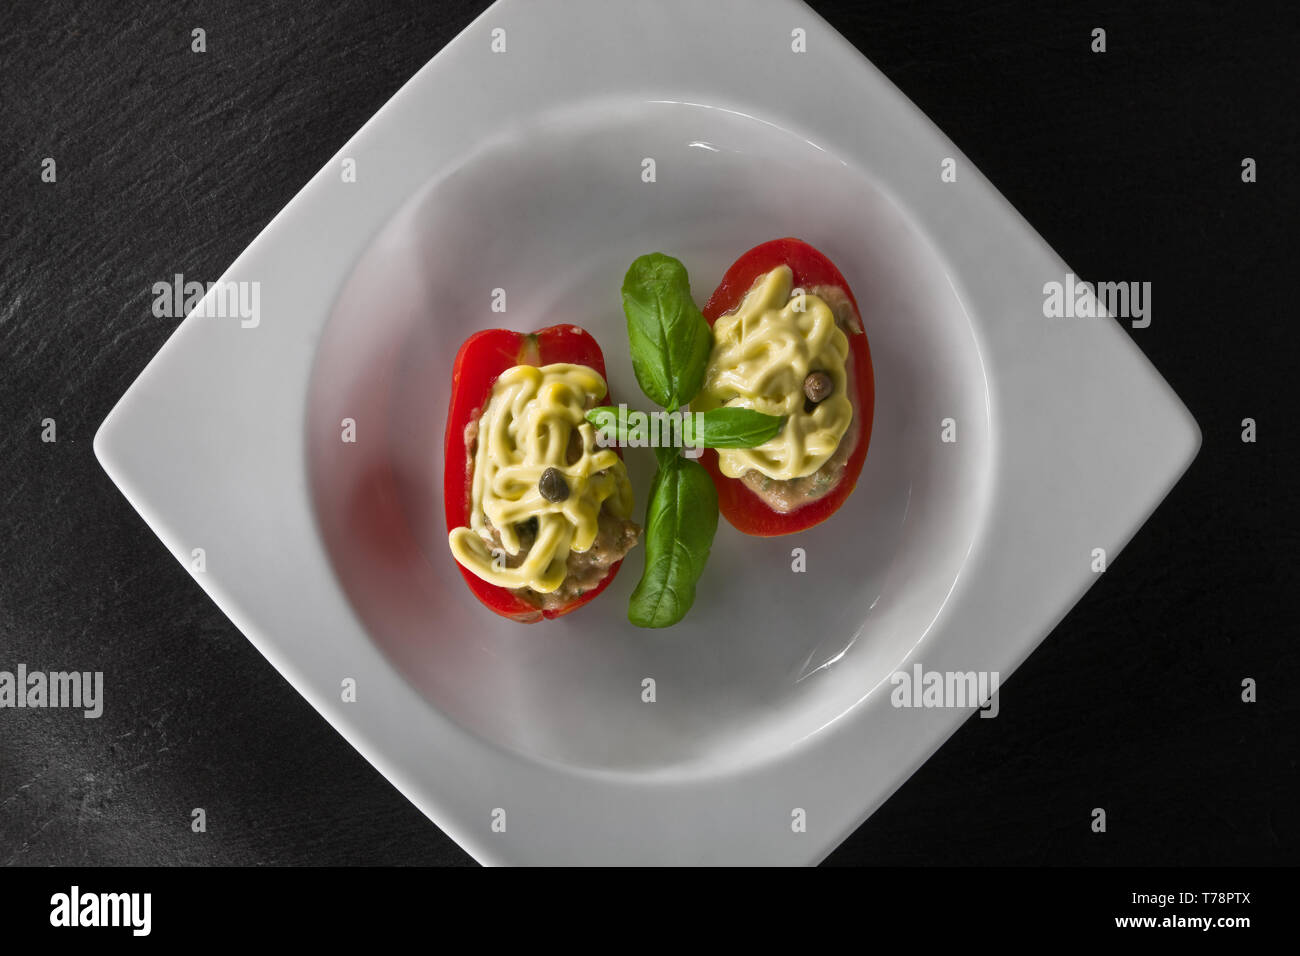 Un piatto di pomodori ripieni con guarnitura di maionese e foglia di basilico. [ENG]  A dish of filled tomatoes covered with mayonnaise and basil leav Stock Photo